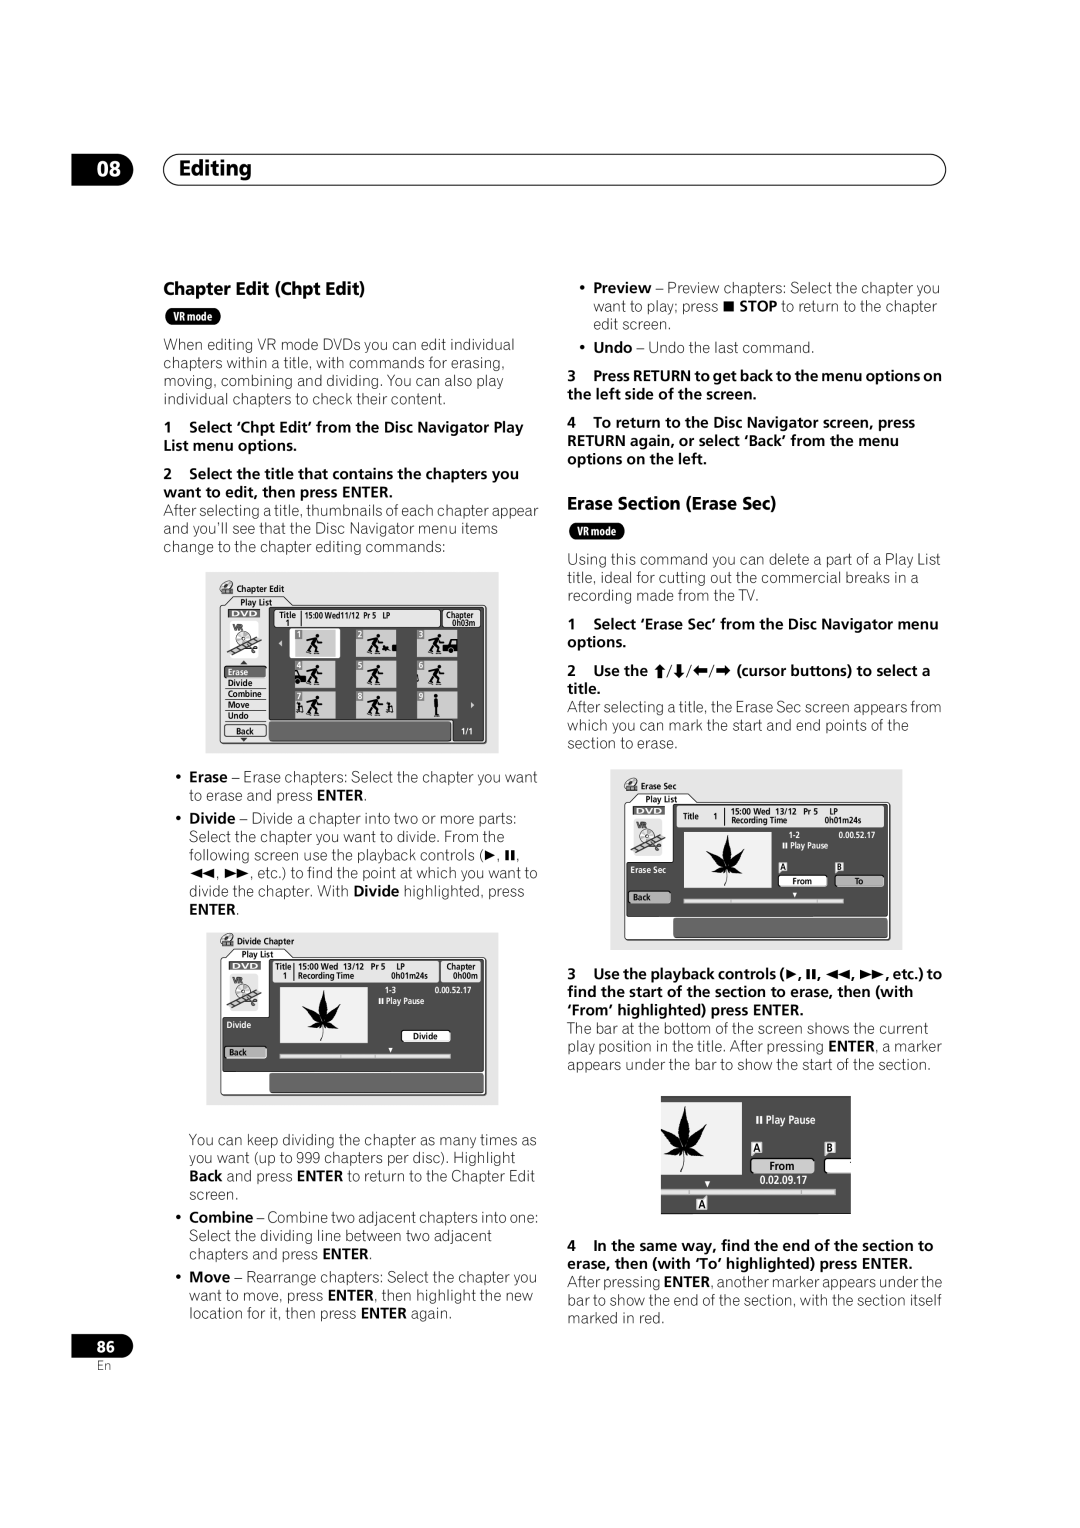 Pioneer DVR-720H, DVR-520H manual Editing, Chapter Edit Chpt Edit, Erase Section Erase Sec, 1500 Wed11/12 Pr 5 LP 